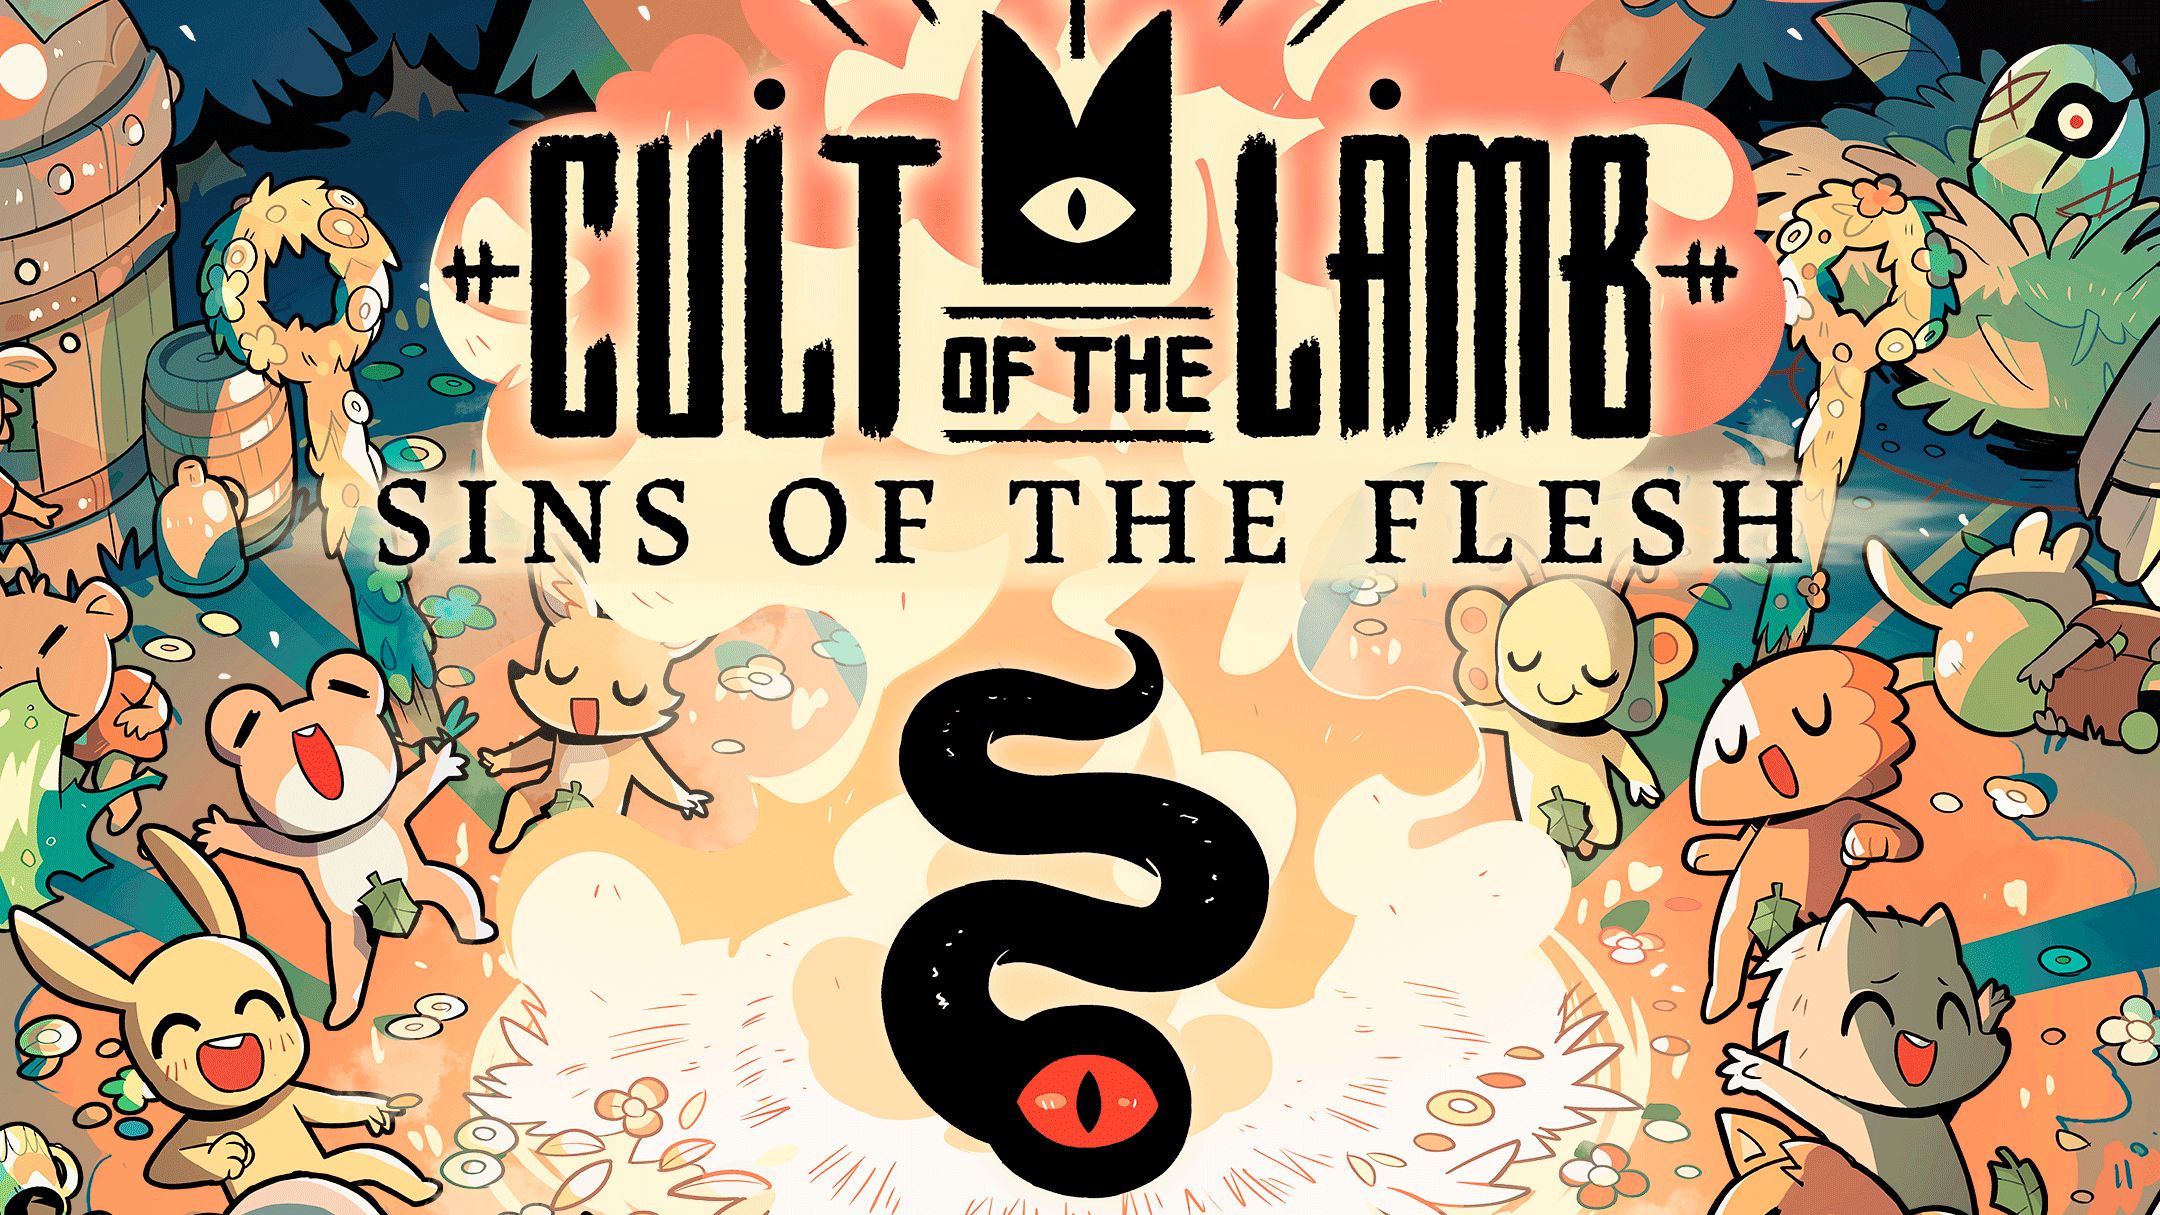 Cult of the Lamb recebeu novo trailer gameplay para explicar as